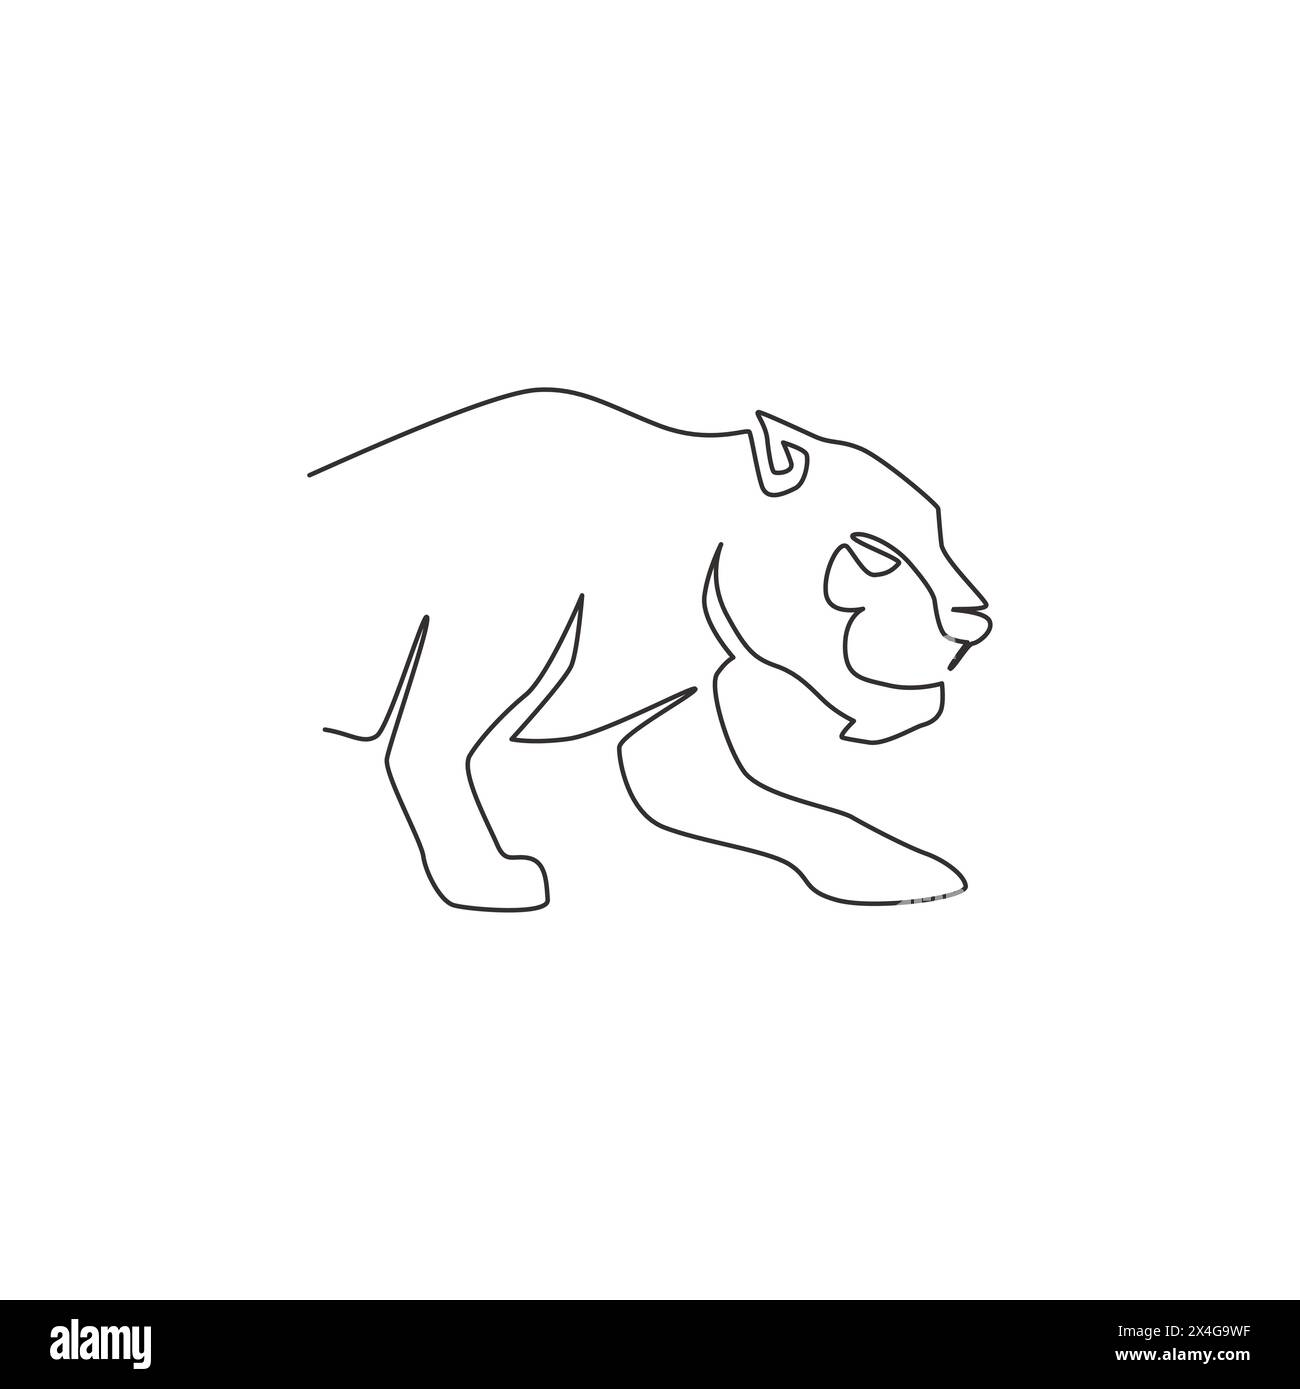 Dessin en ligne continue unique de léopard élégant pour l'identité du logo de l'équipe de chasseur. Concept de mascotte animal mammifère jaguar dangereux pour club de sport. Moderne Illustration de Vecteur